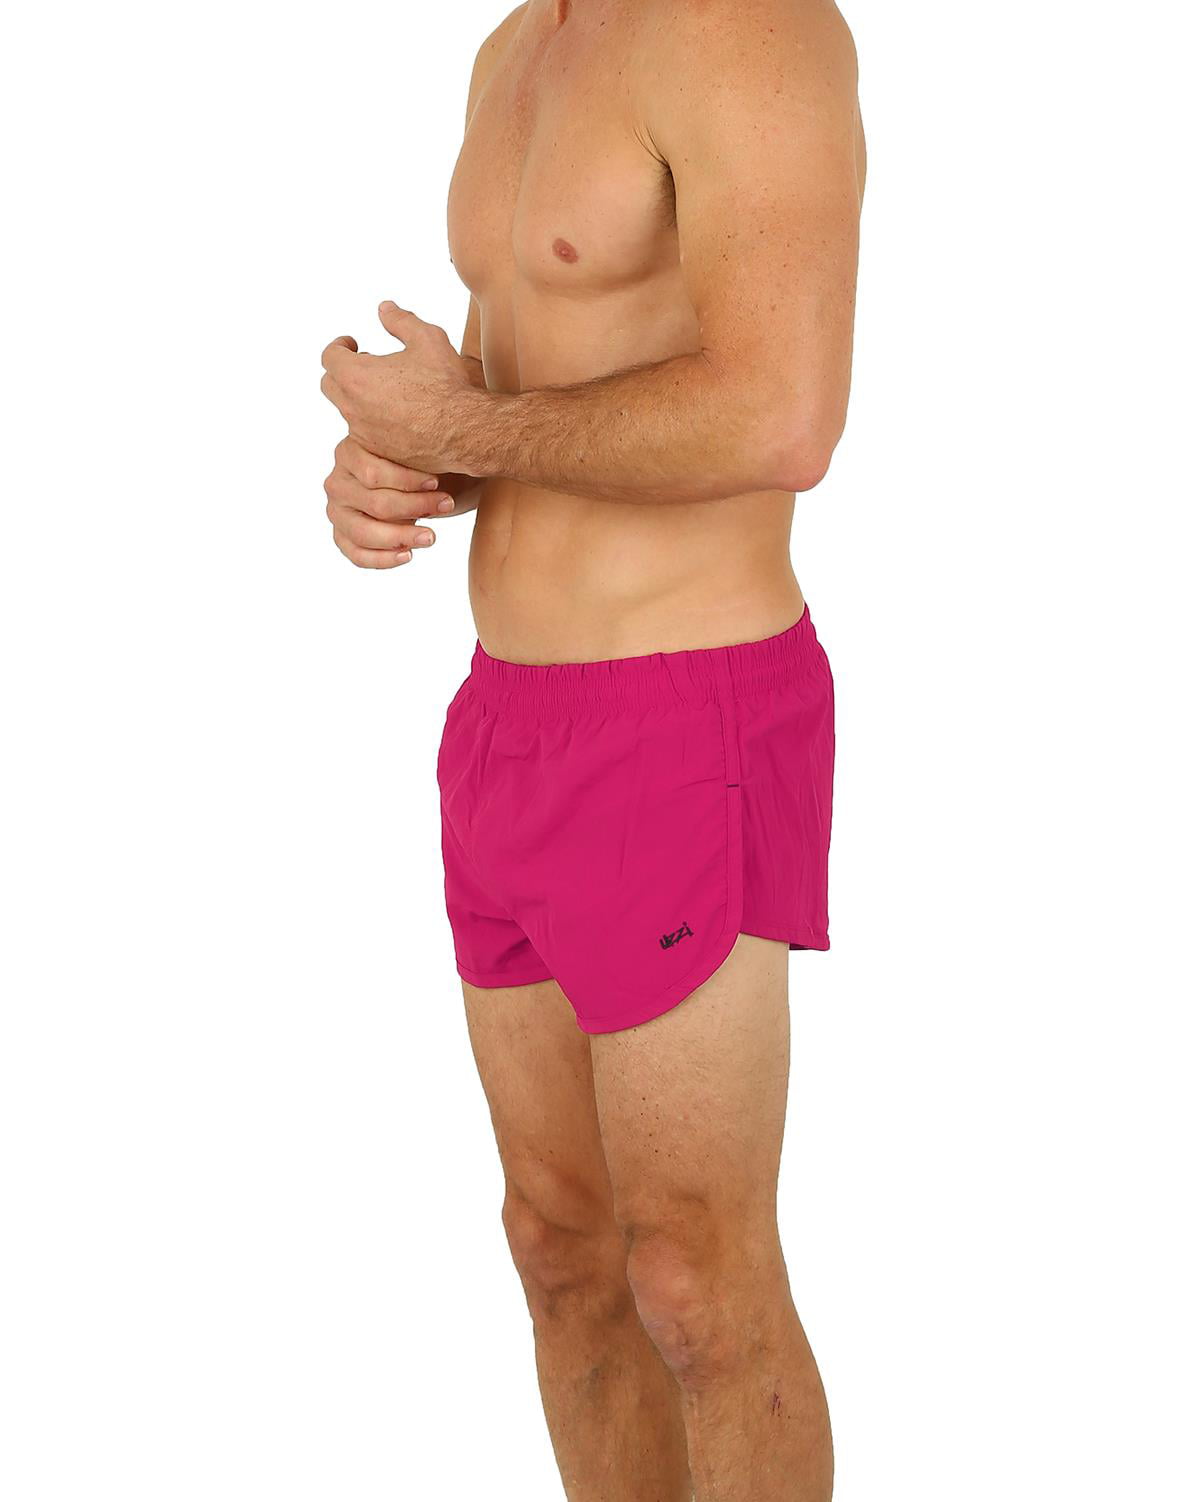 UZZI Mens Swim Trunks Nylon Boxer Shorts Running Shorts, Fuchsia, Size:  Large, Uzzi Active Wear